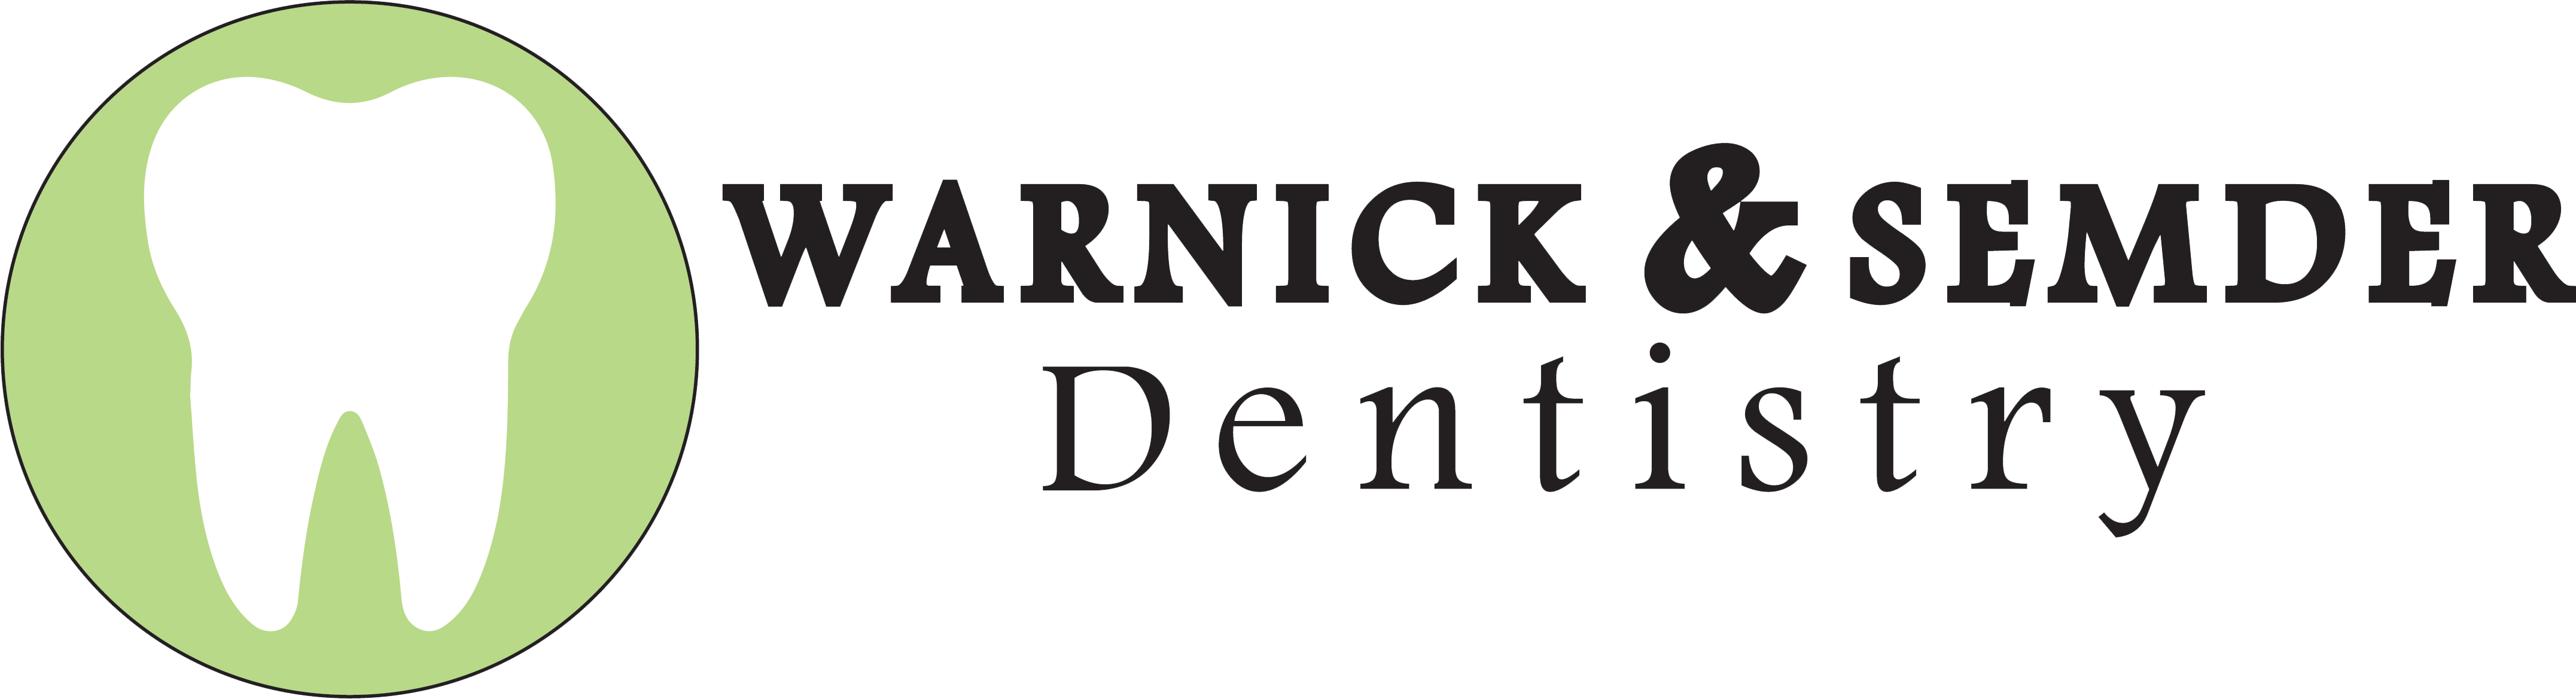 Warnick & Semder Dentistry logo